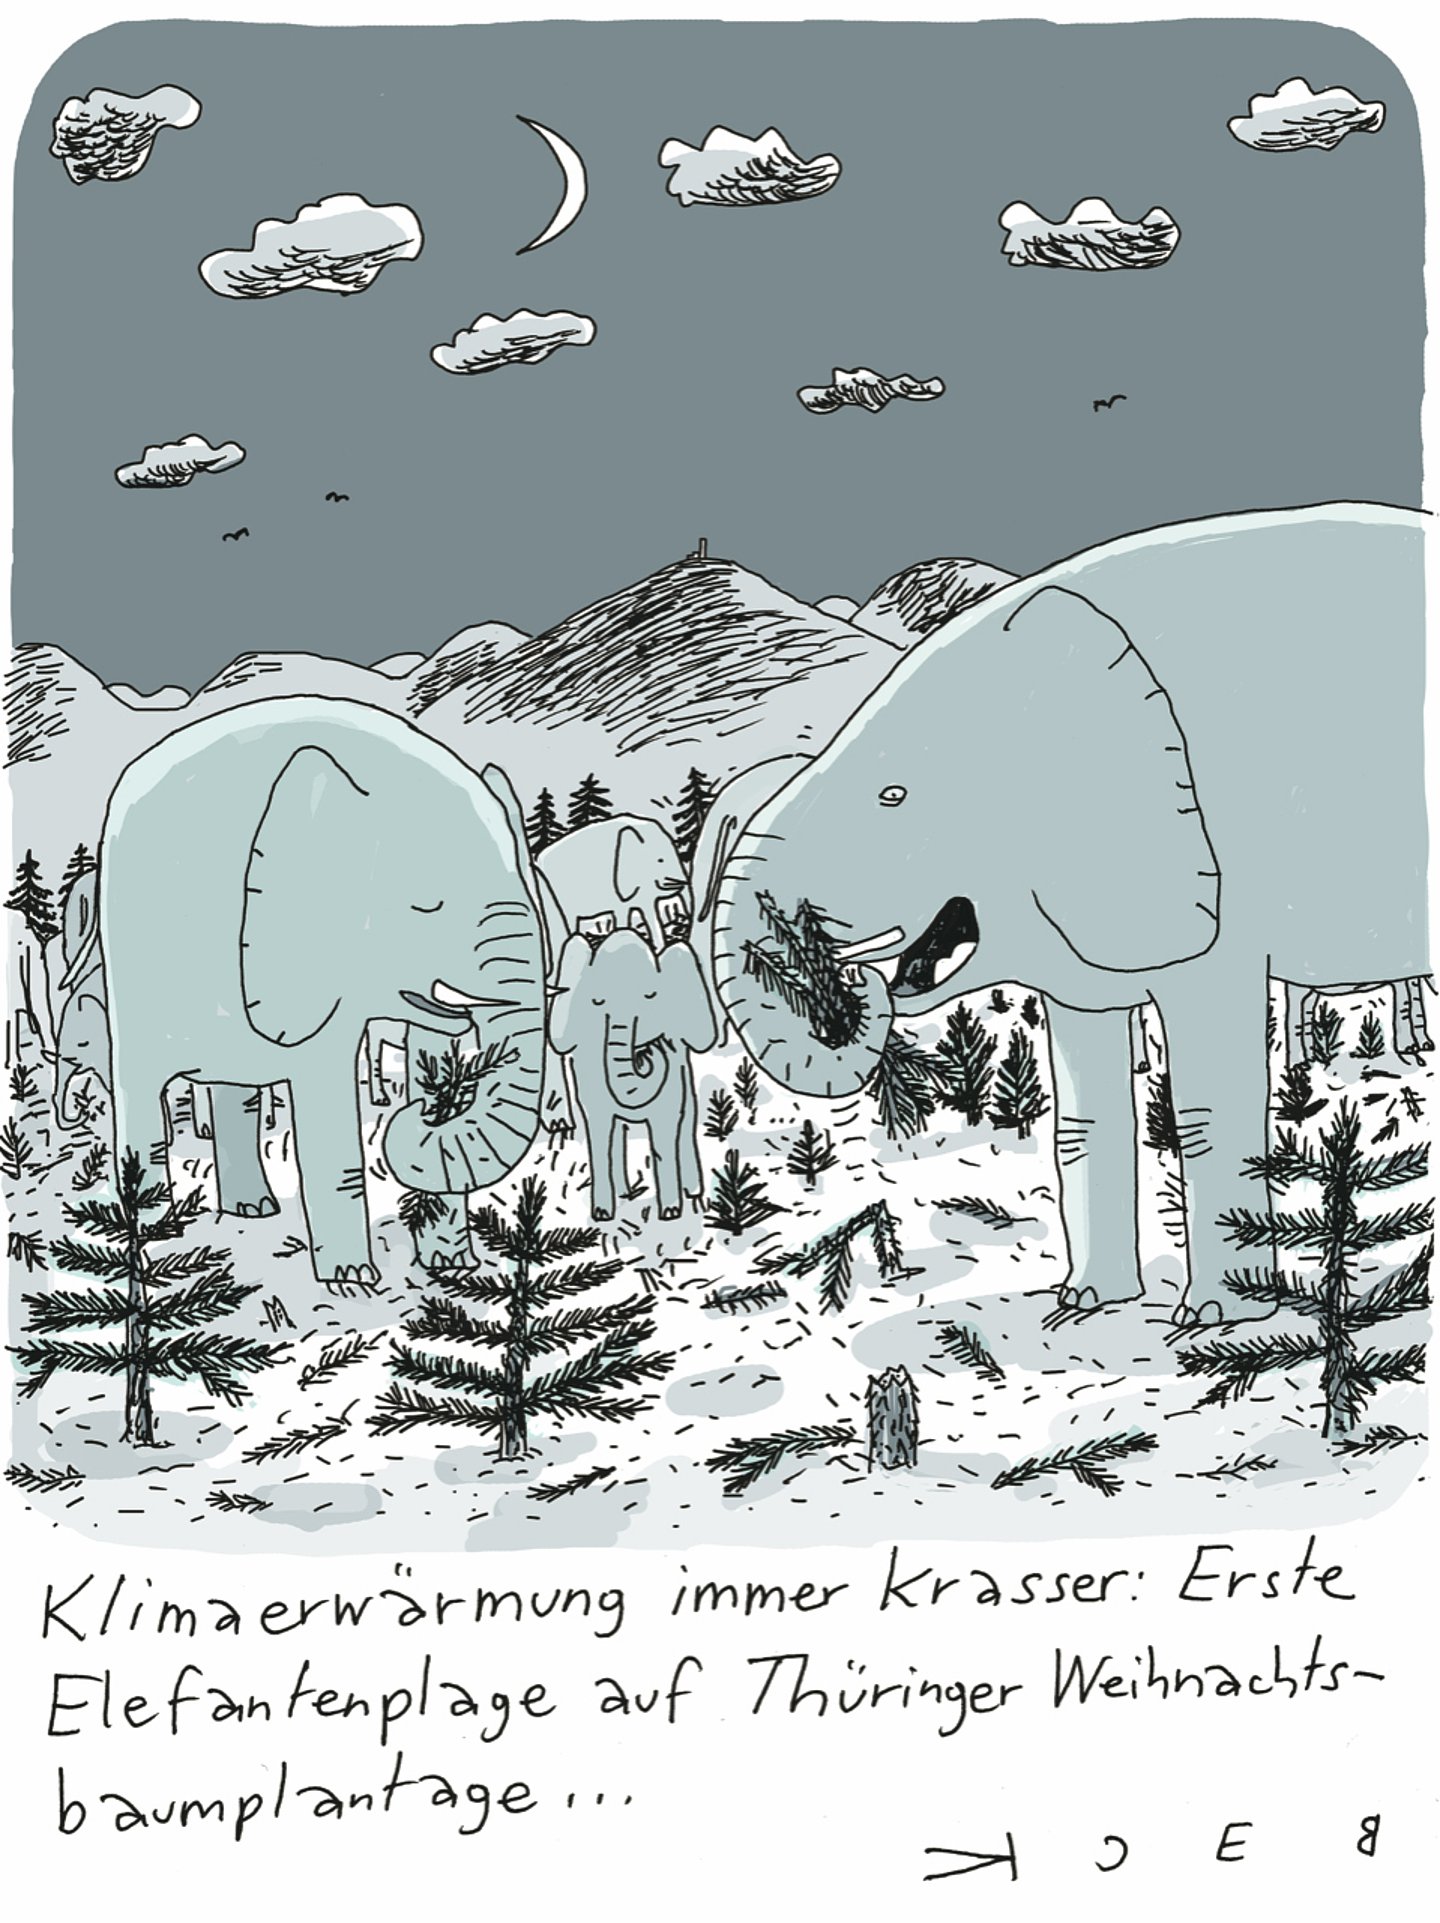 Cartoon von Beck: Zwei Elefanten fressen Tannenbäume. Darunter steht: "Klimaerwärmung immer krasser: Erste Elefantenplage auf Thüringer Weihnachtsbaumplantage"